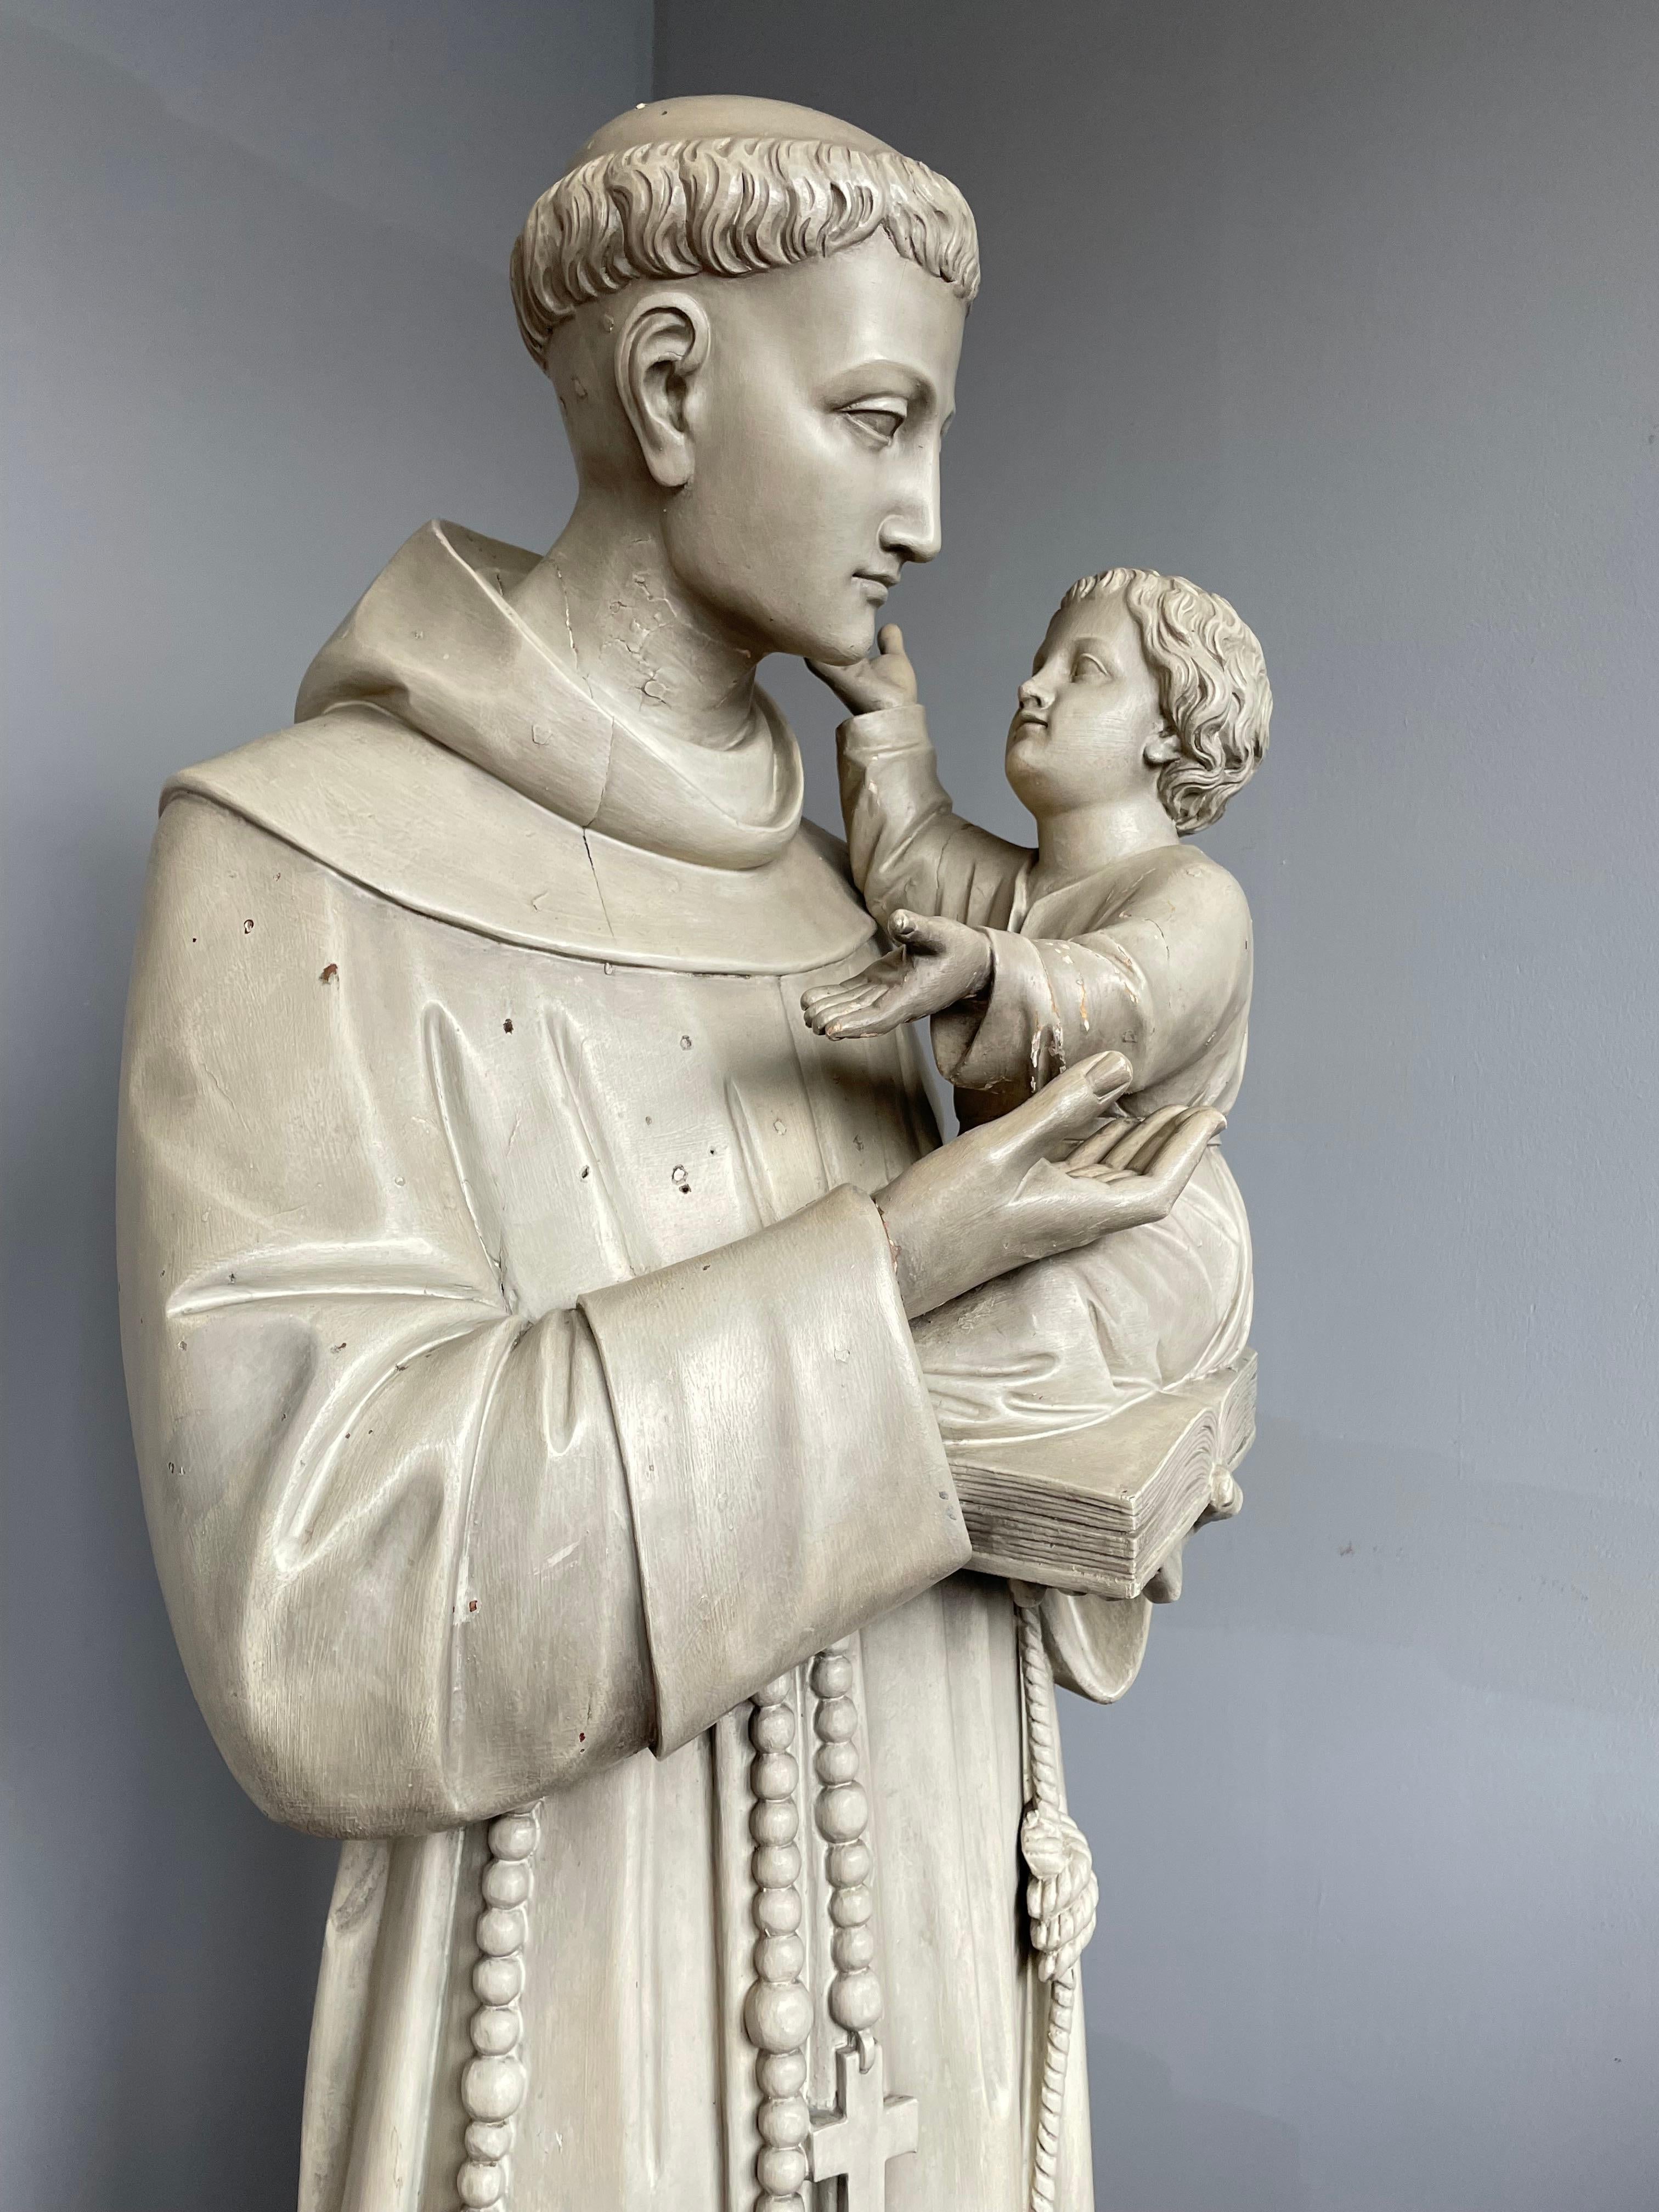 Statue sculptée de qualité supérieure de saint Antoine tenant l'enfant Jésus dans ses bras.

Cette rare statue en bois de Saint Antoine et de l'enfant Jésus est en très bon état. Cette œuvre d'art religieux est entièrement sculptée à la main dans du